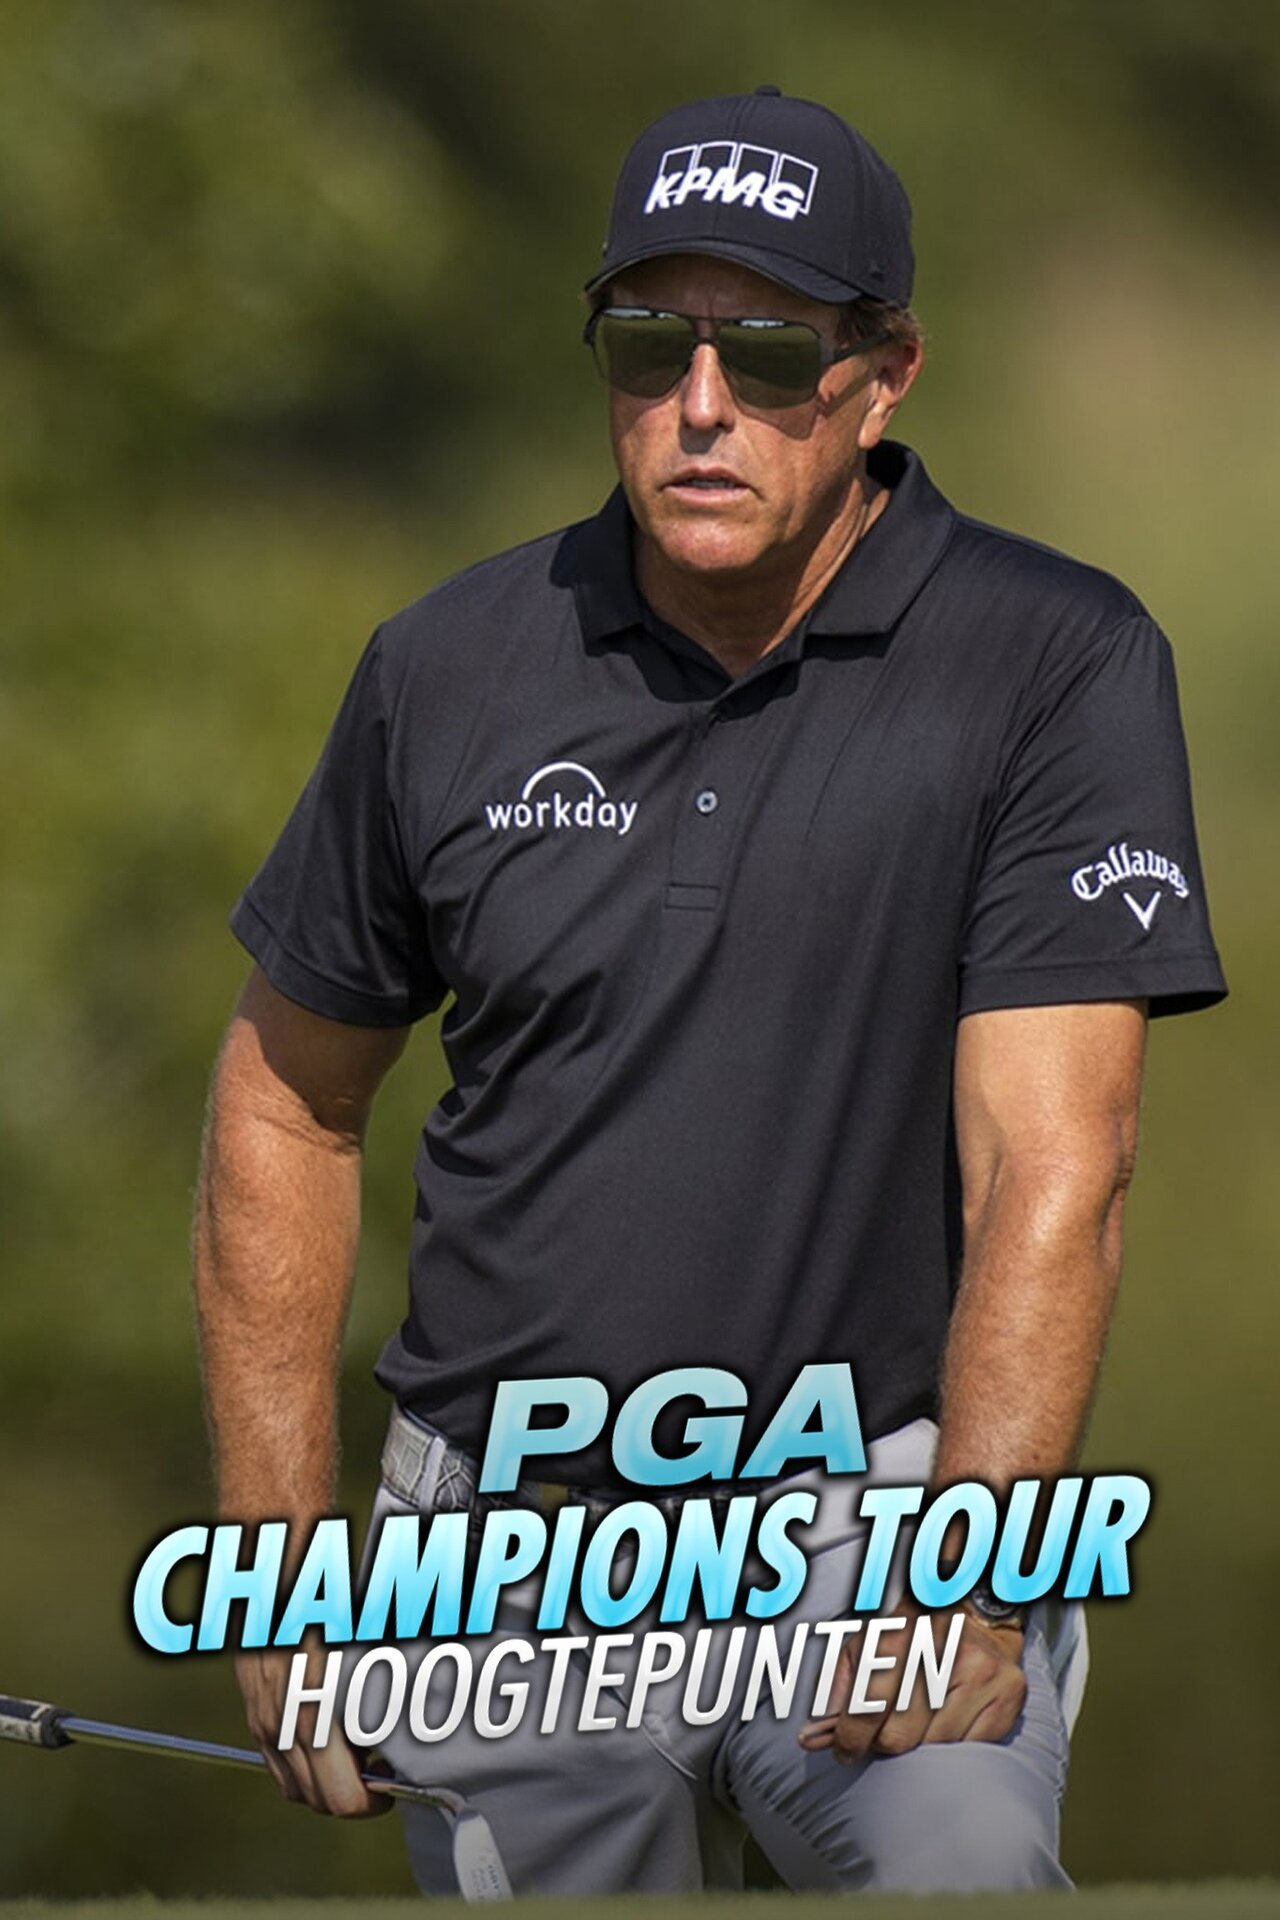 PGA Champions Tour Hoogtepunten